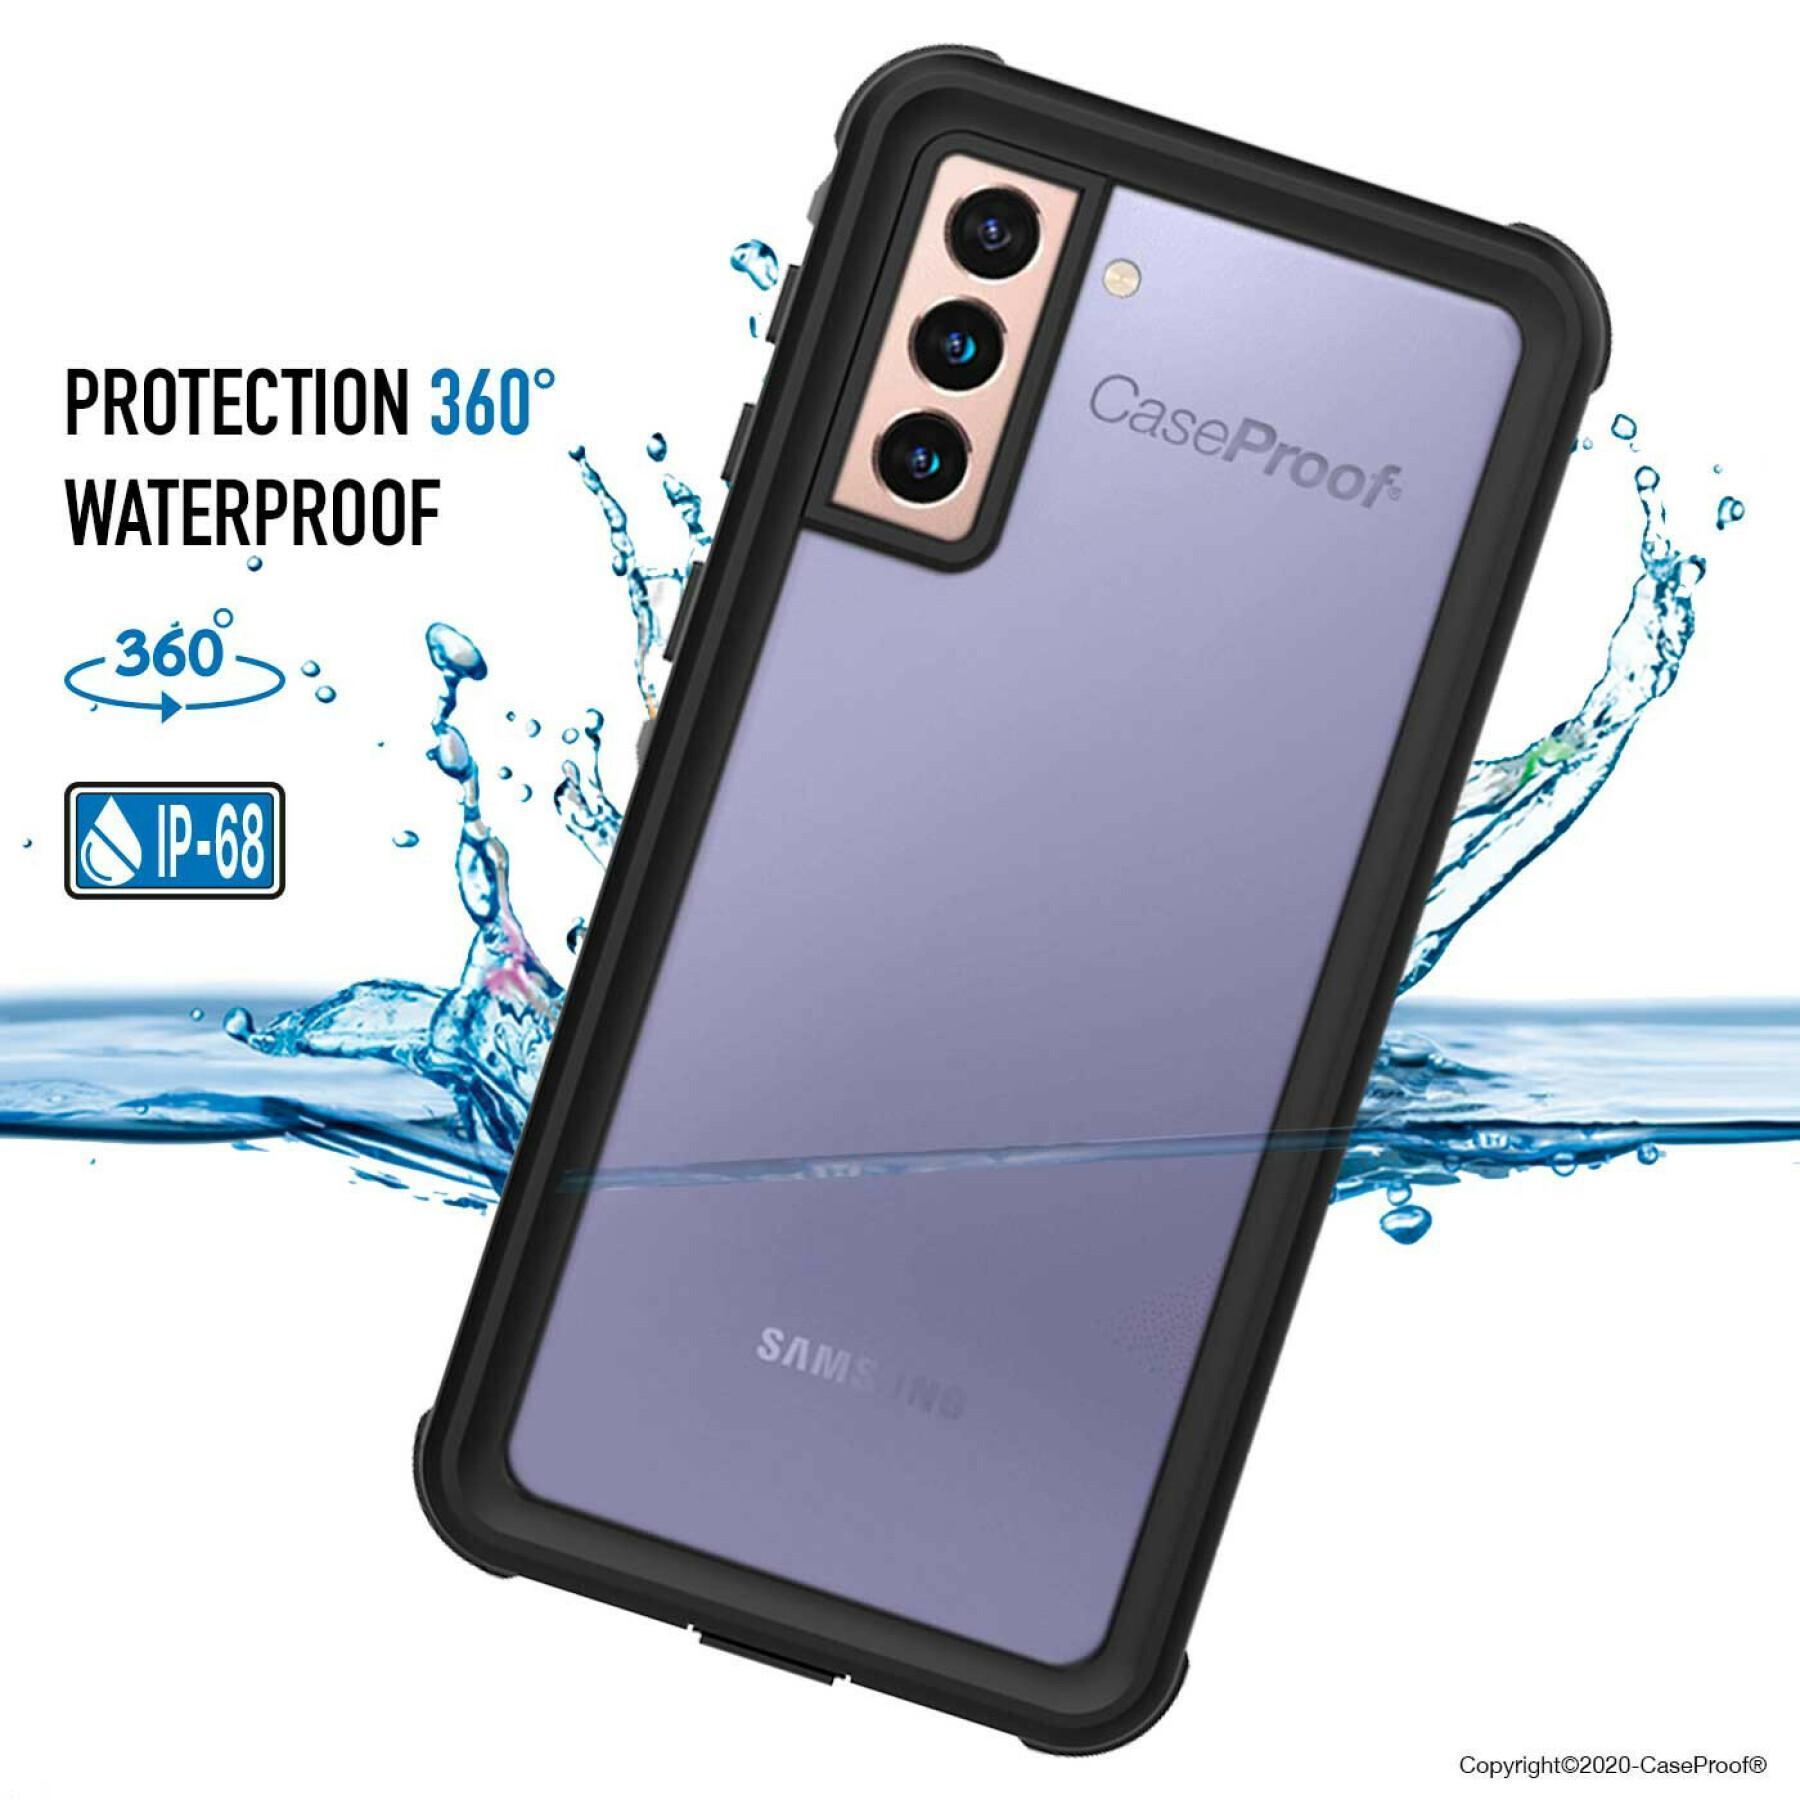 Smartphone-Hülle samsung galaxy s21 plus 5g wasserdicht und stoßfest waterproof CaseProof